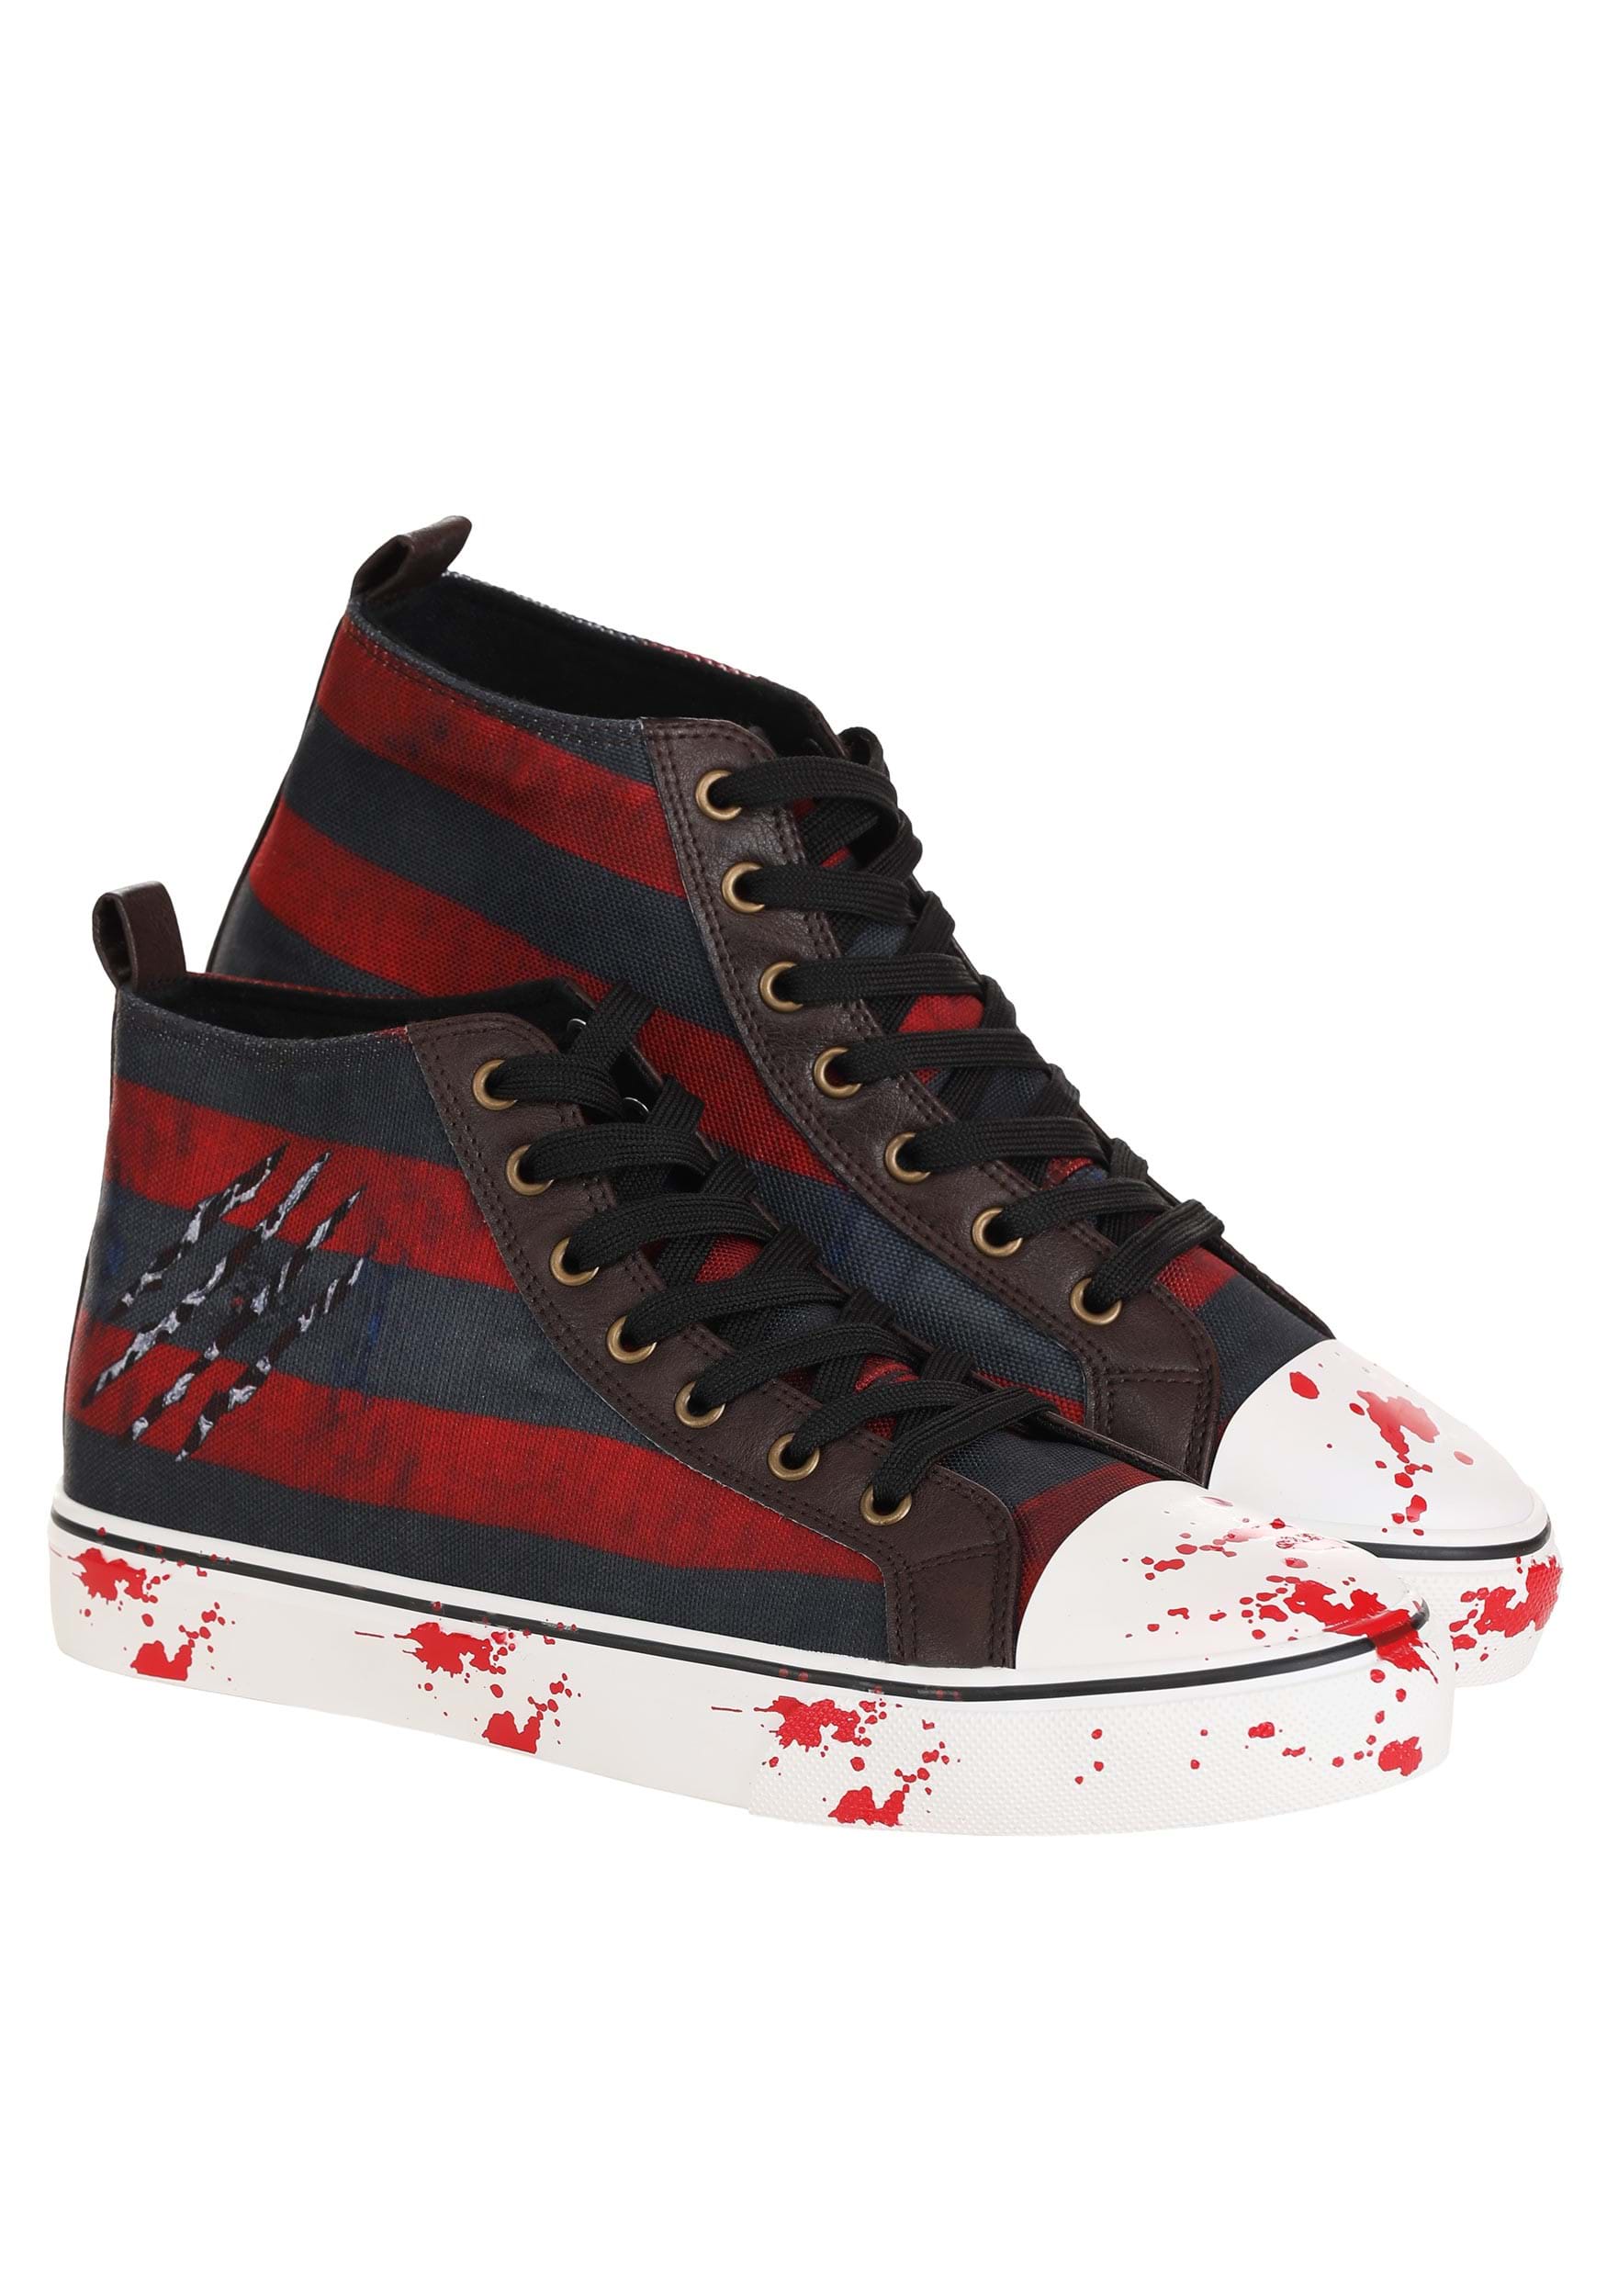 Adult Nightmare On Elm Street Freddy Krueger Sneakers